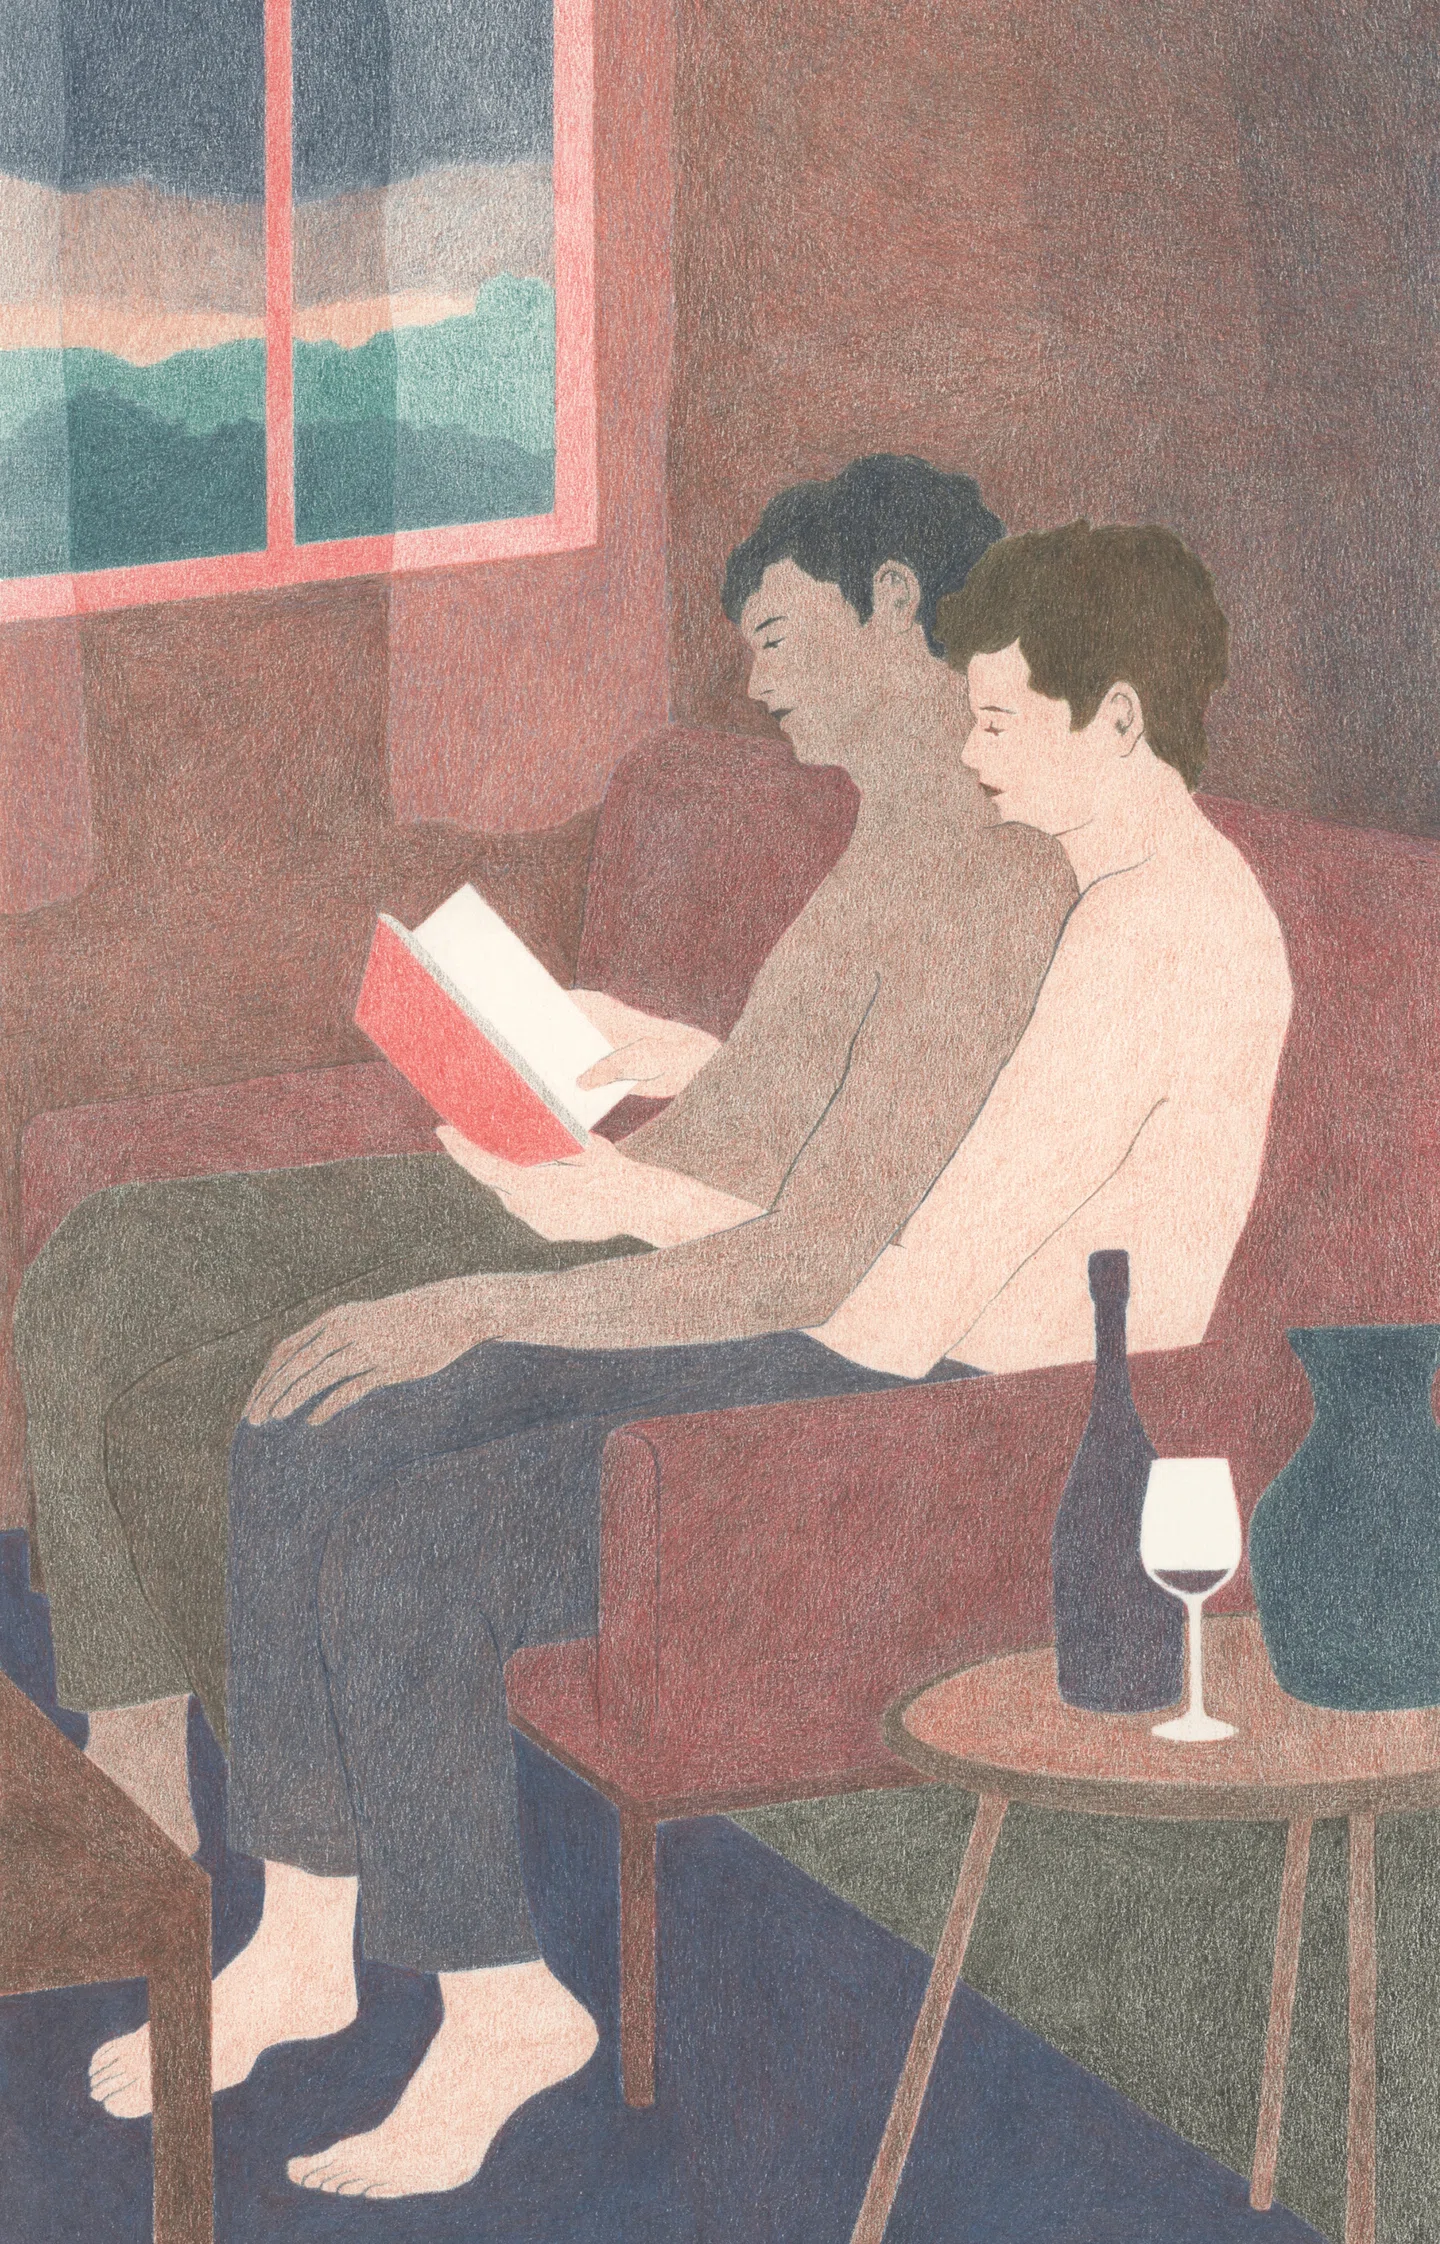 Camille Deschiens desenha cenas suaves de amor, conexão e intimidade